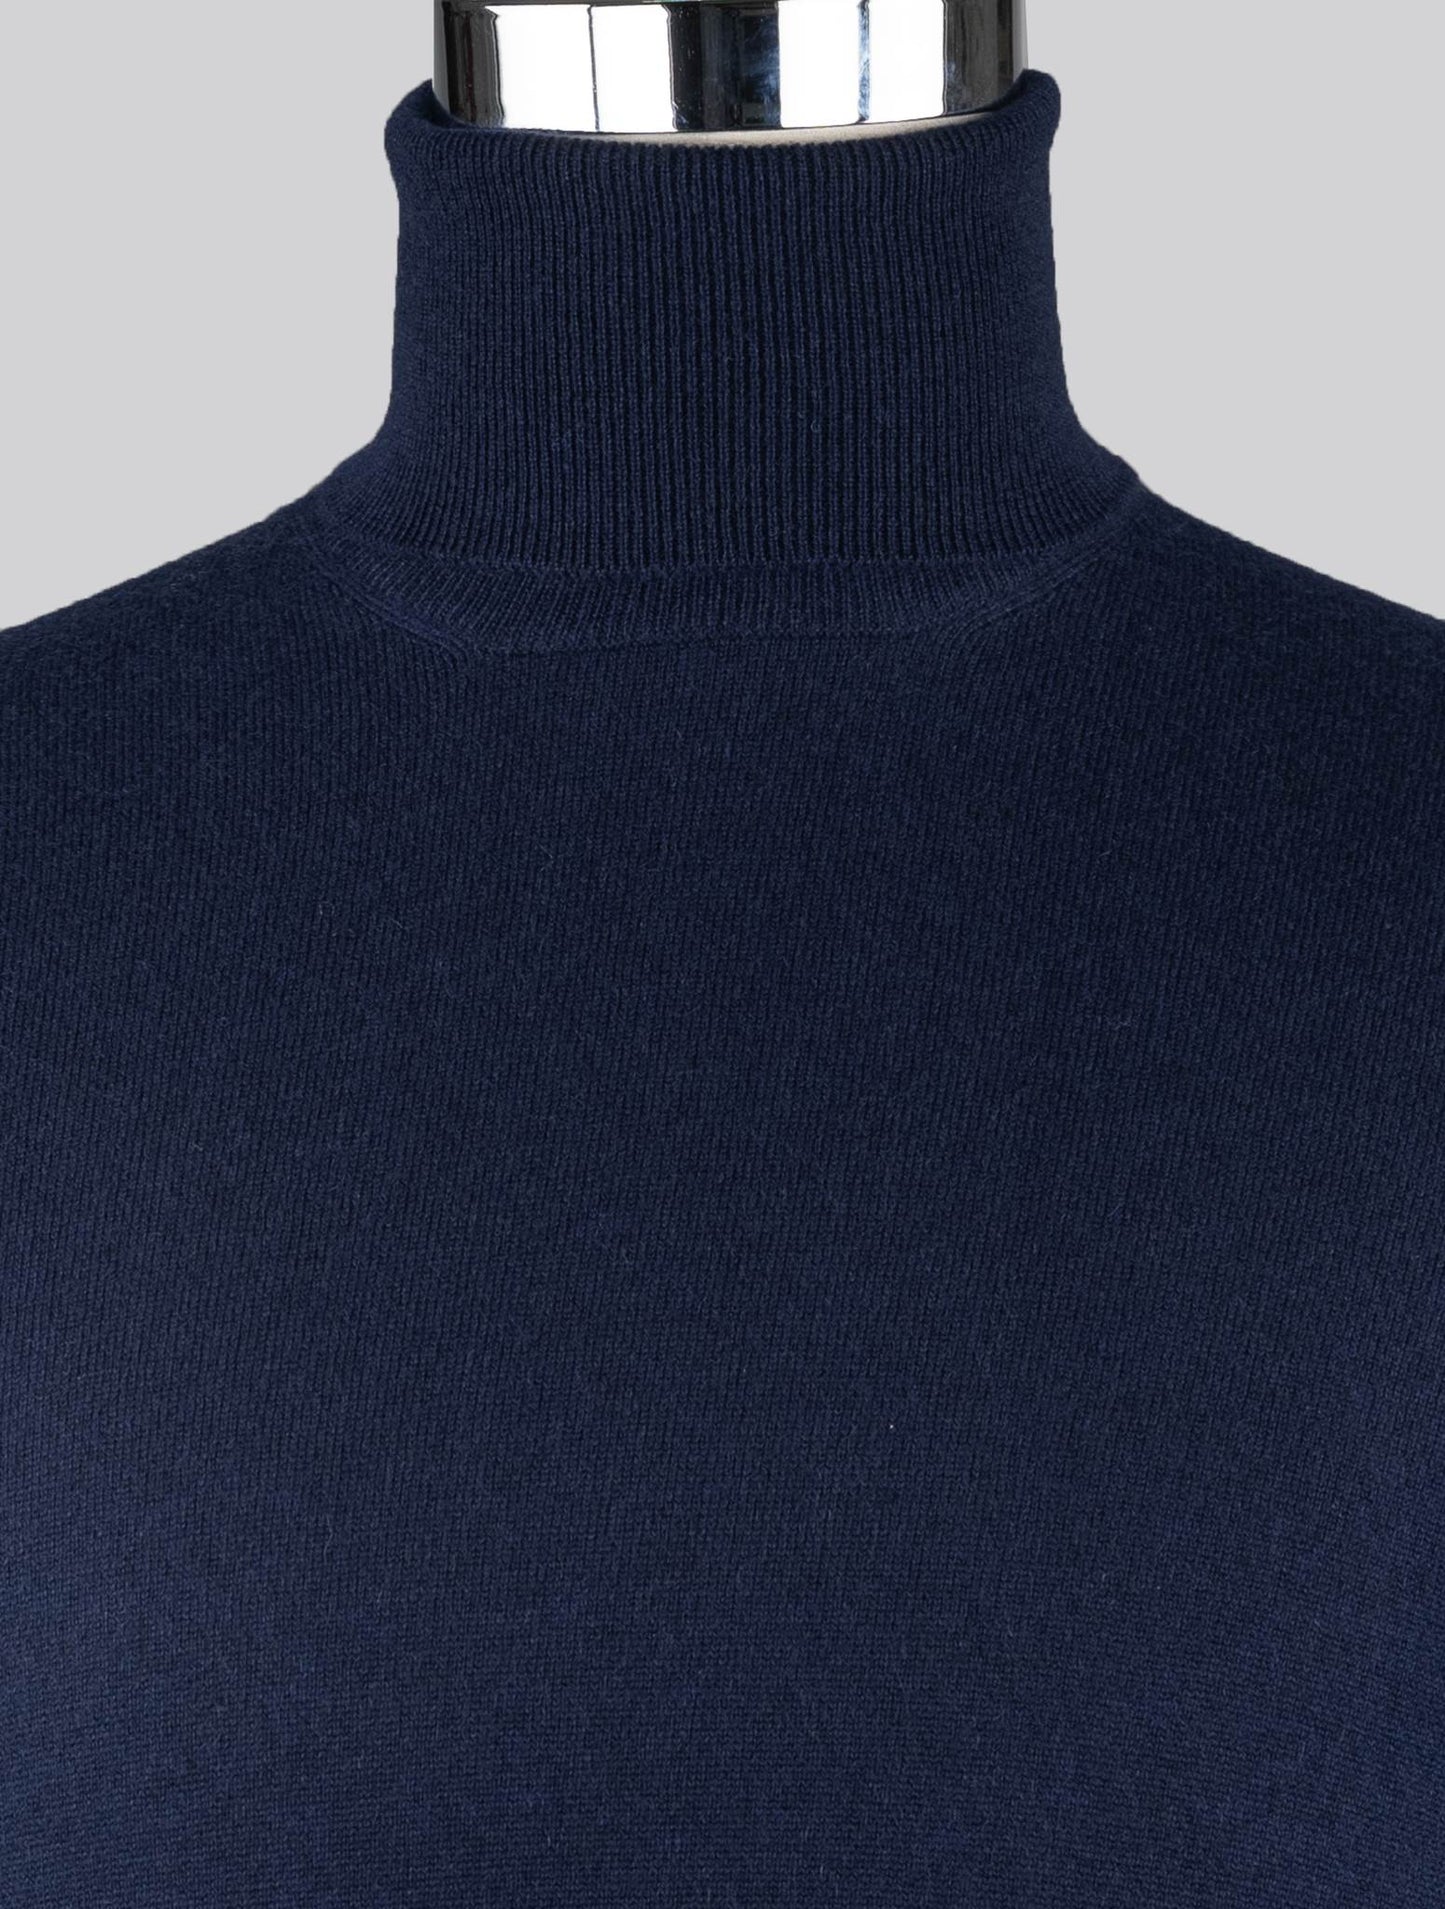 Brunello Cucinelli Modrý kašmírový svetr s želvím krkem